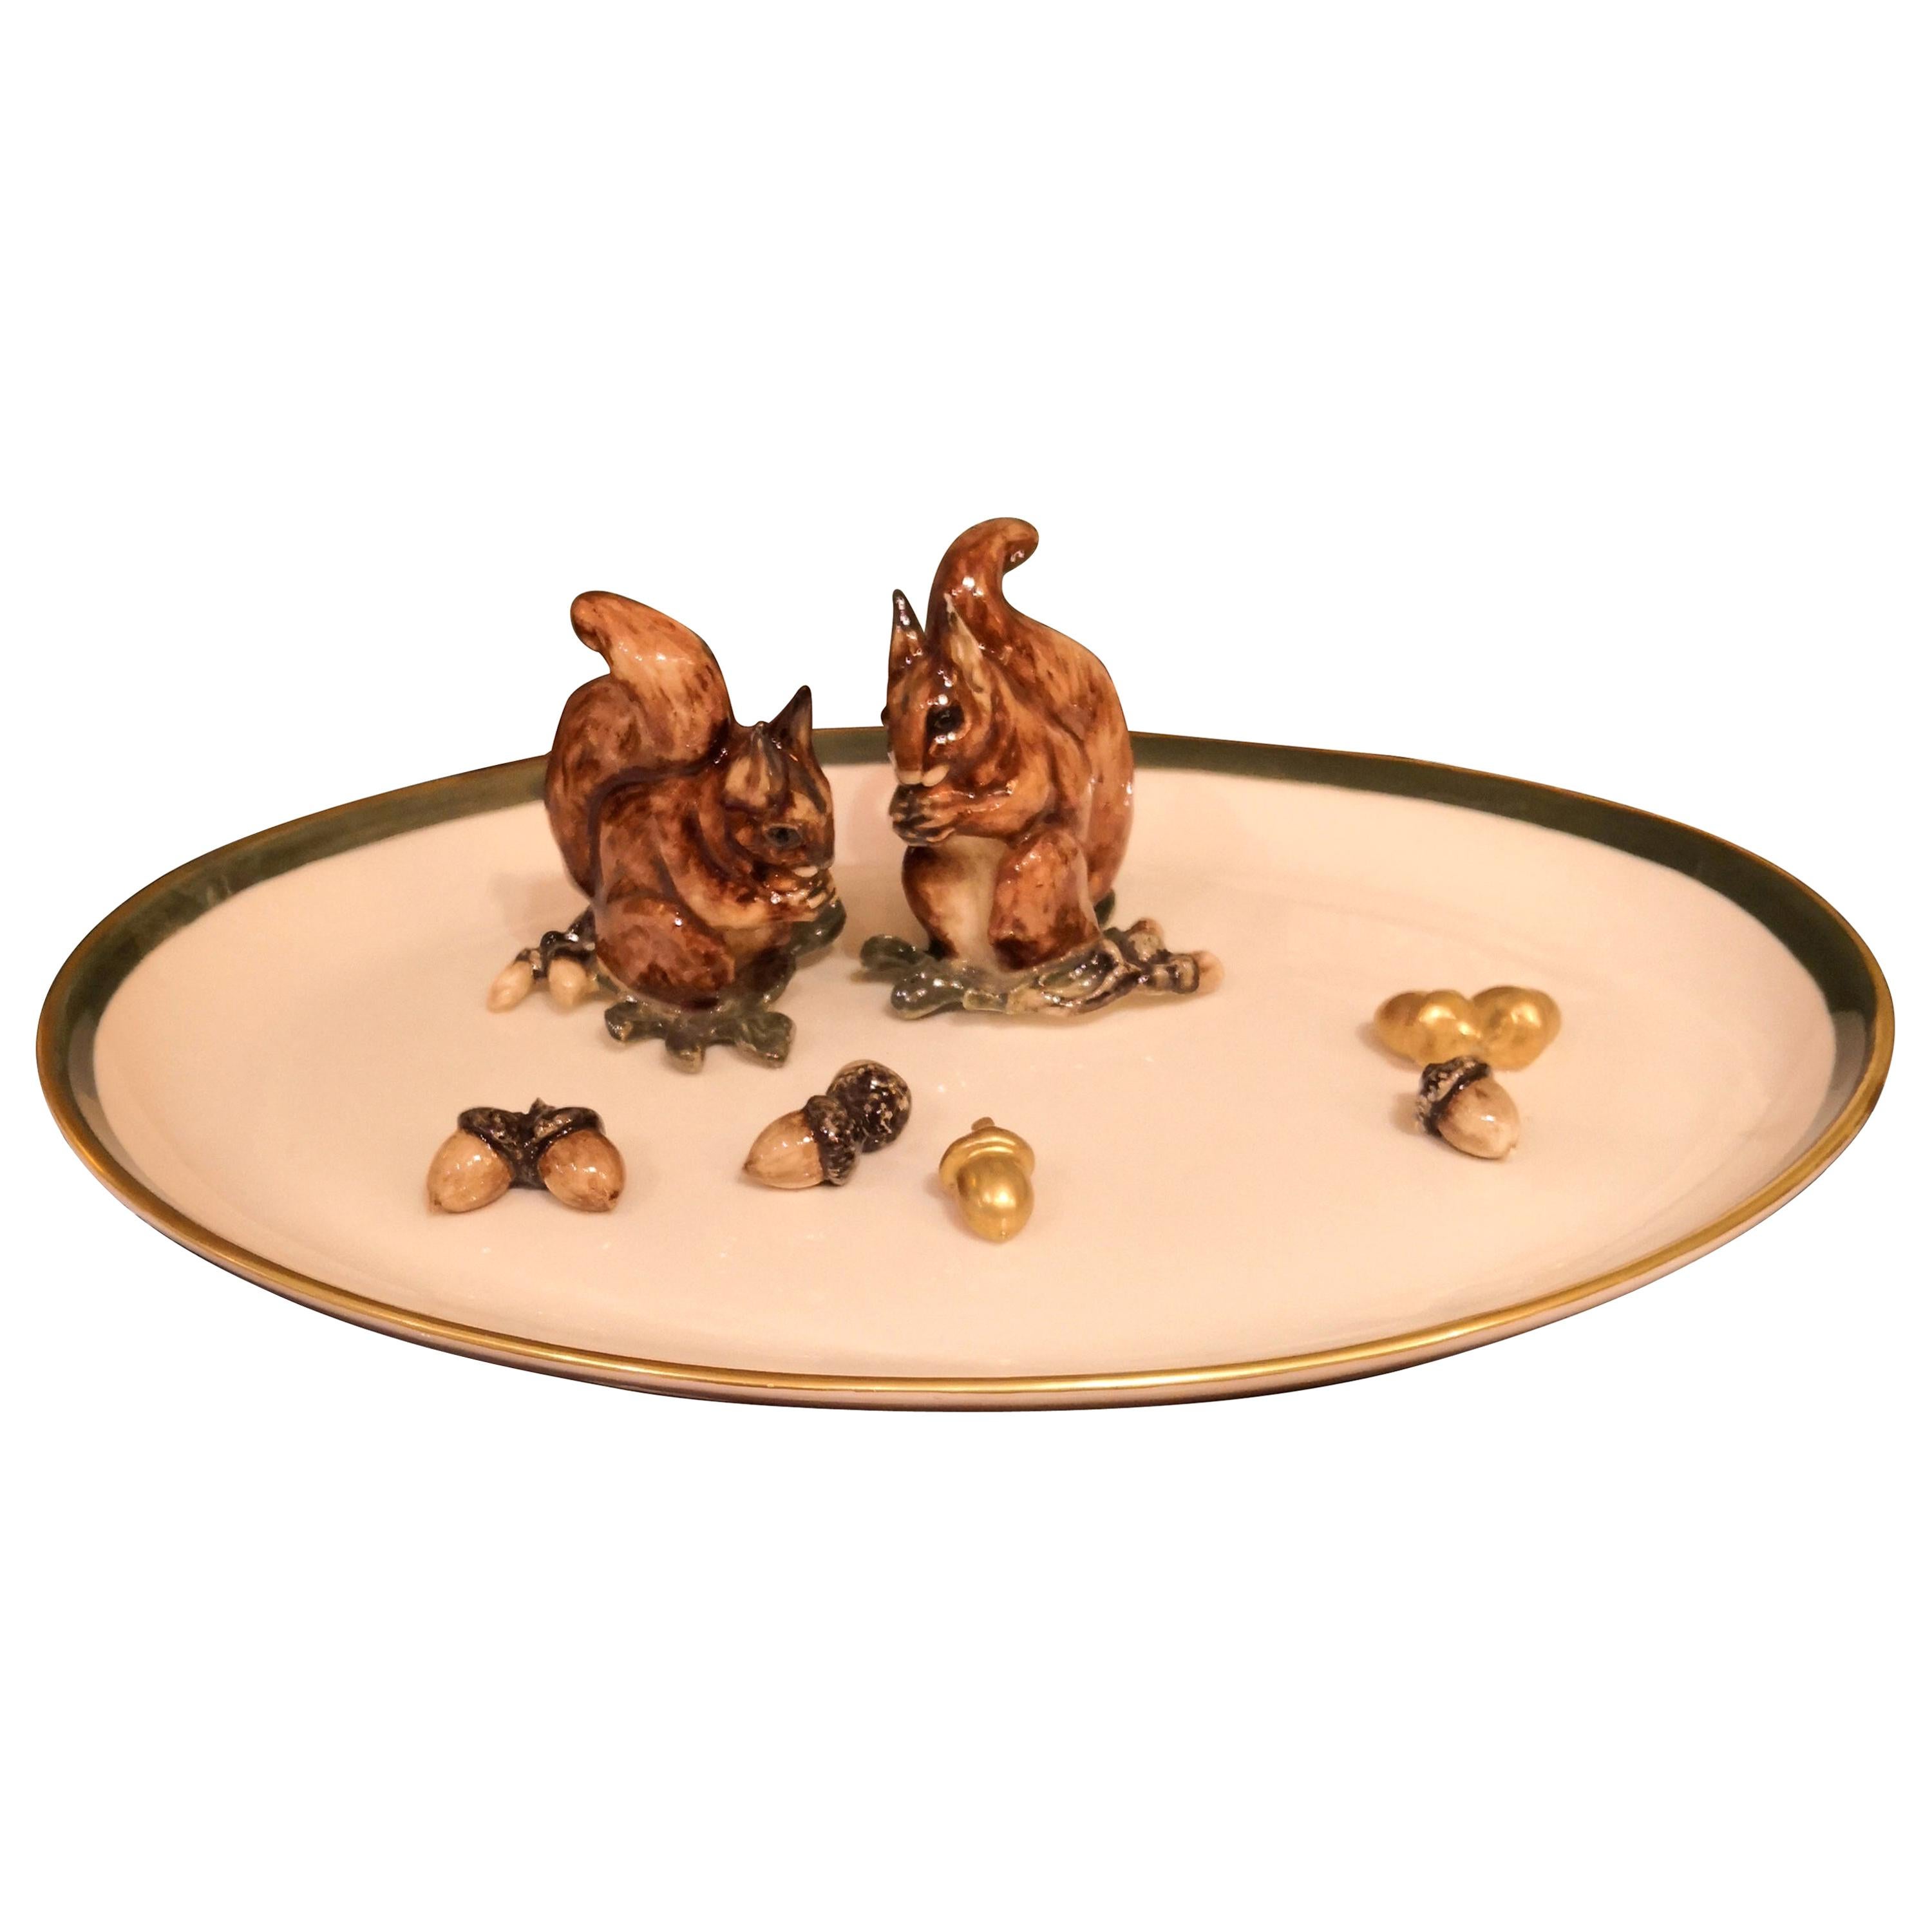 Assiette ovale en porcelaine de la Forêt-Noire avec écureuils Sofina Boutique Kitzbhel